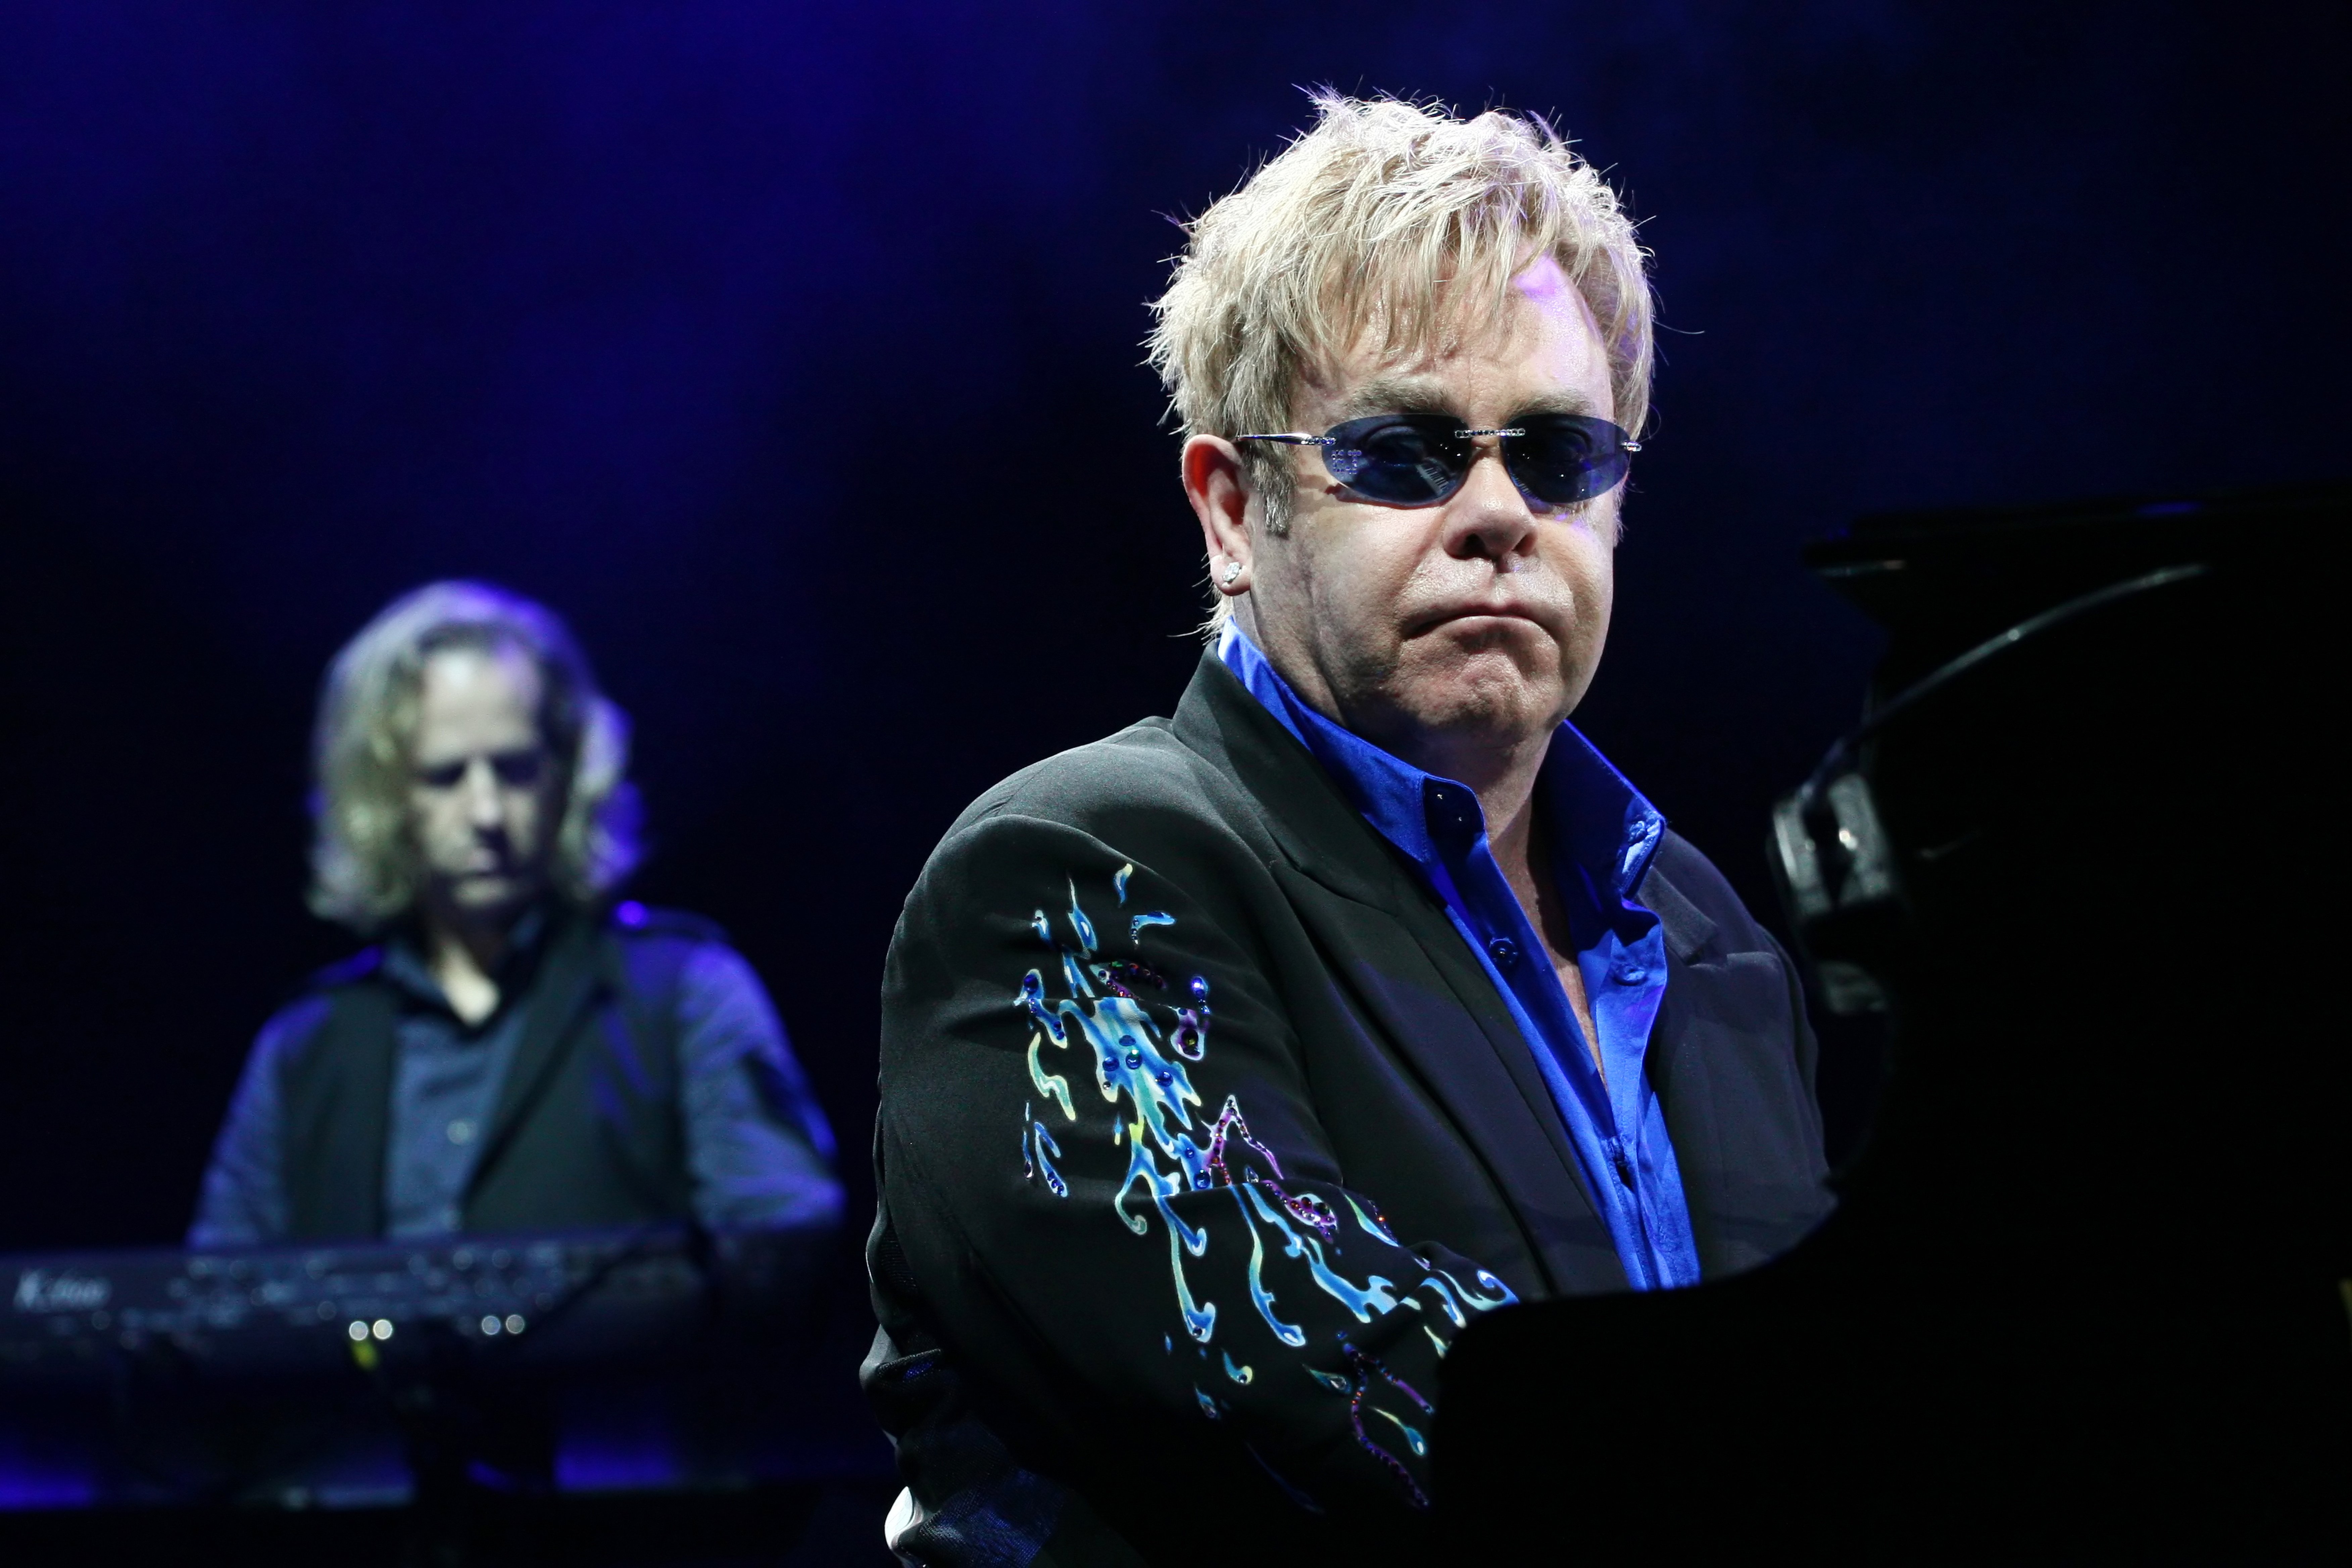 Le chanteur Elton John se produit sur scène au Minsk Arena le 26 juin 2010 | Source : Shutterstock